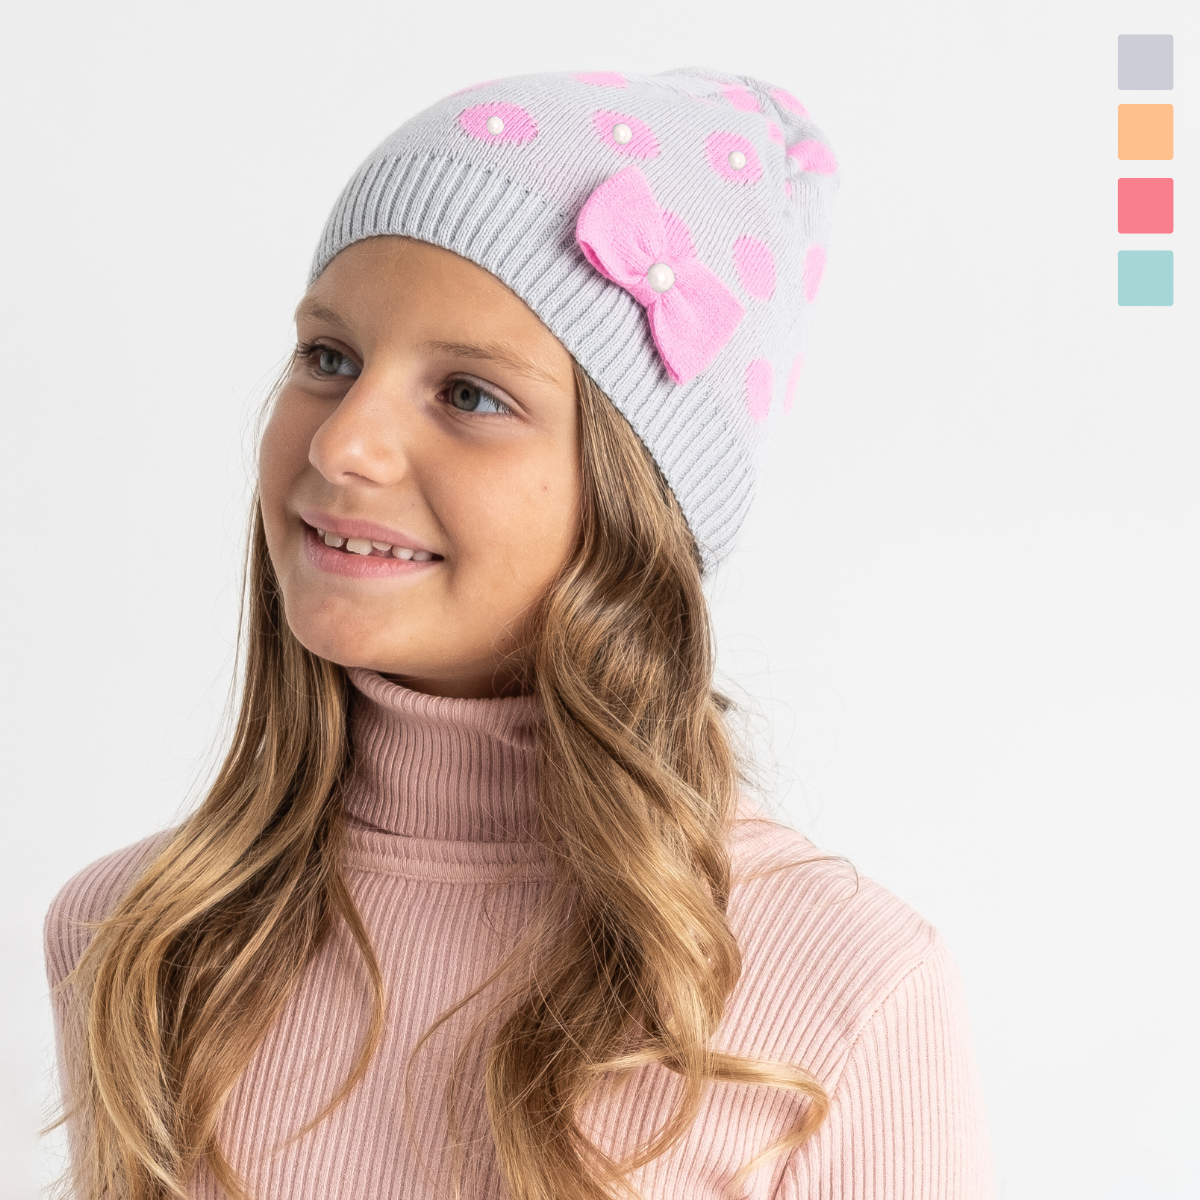 0458-2 микс расцветок шапка на девочку 5-9 лет (5 ед. универсальный подростковый размер)